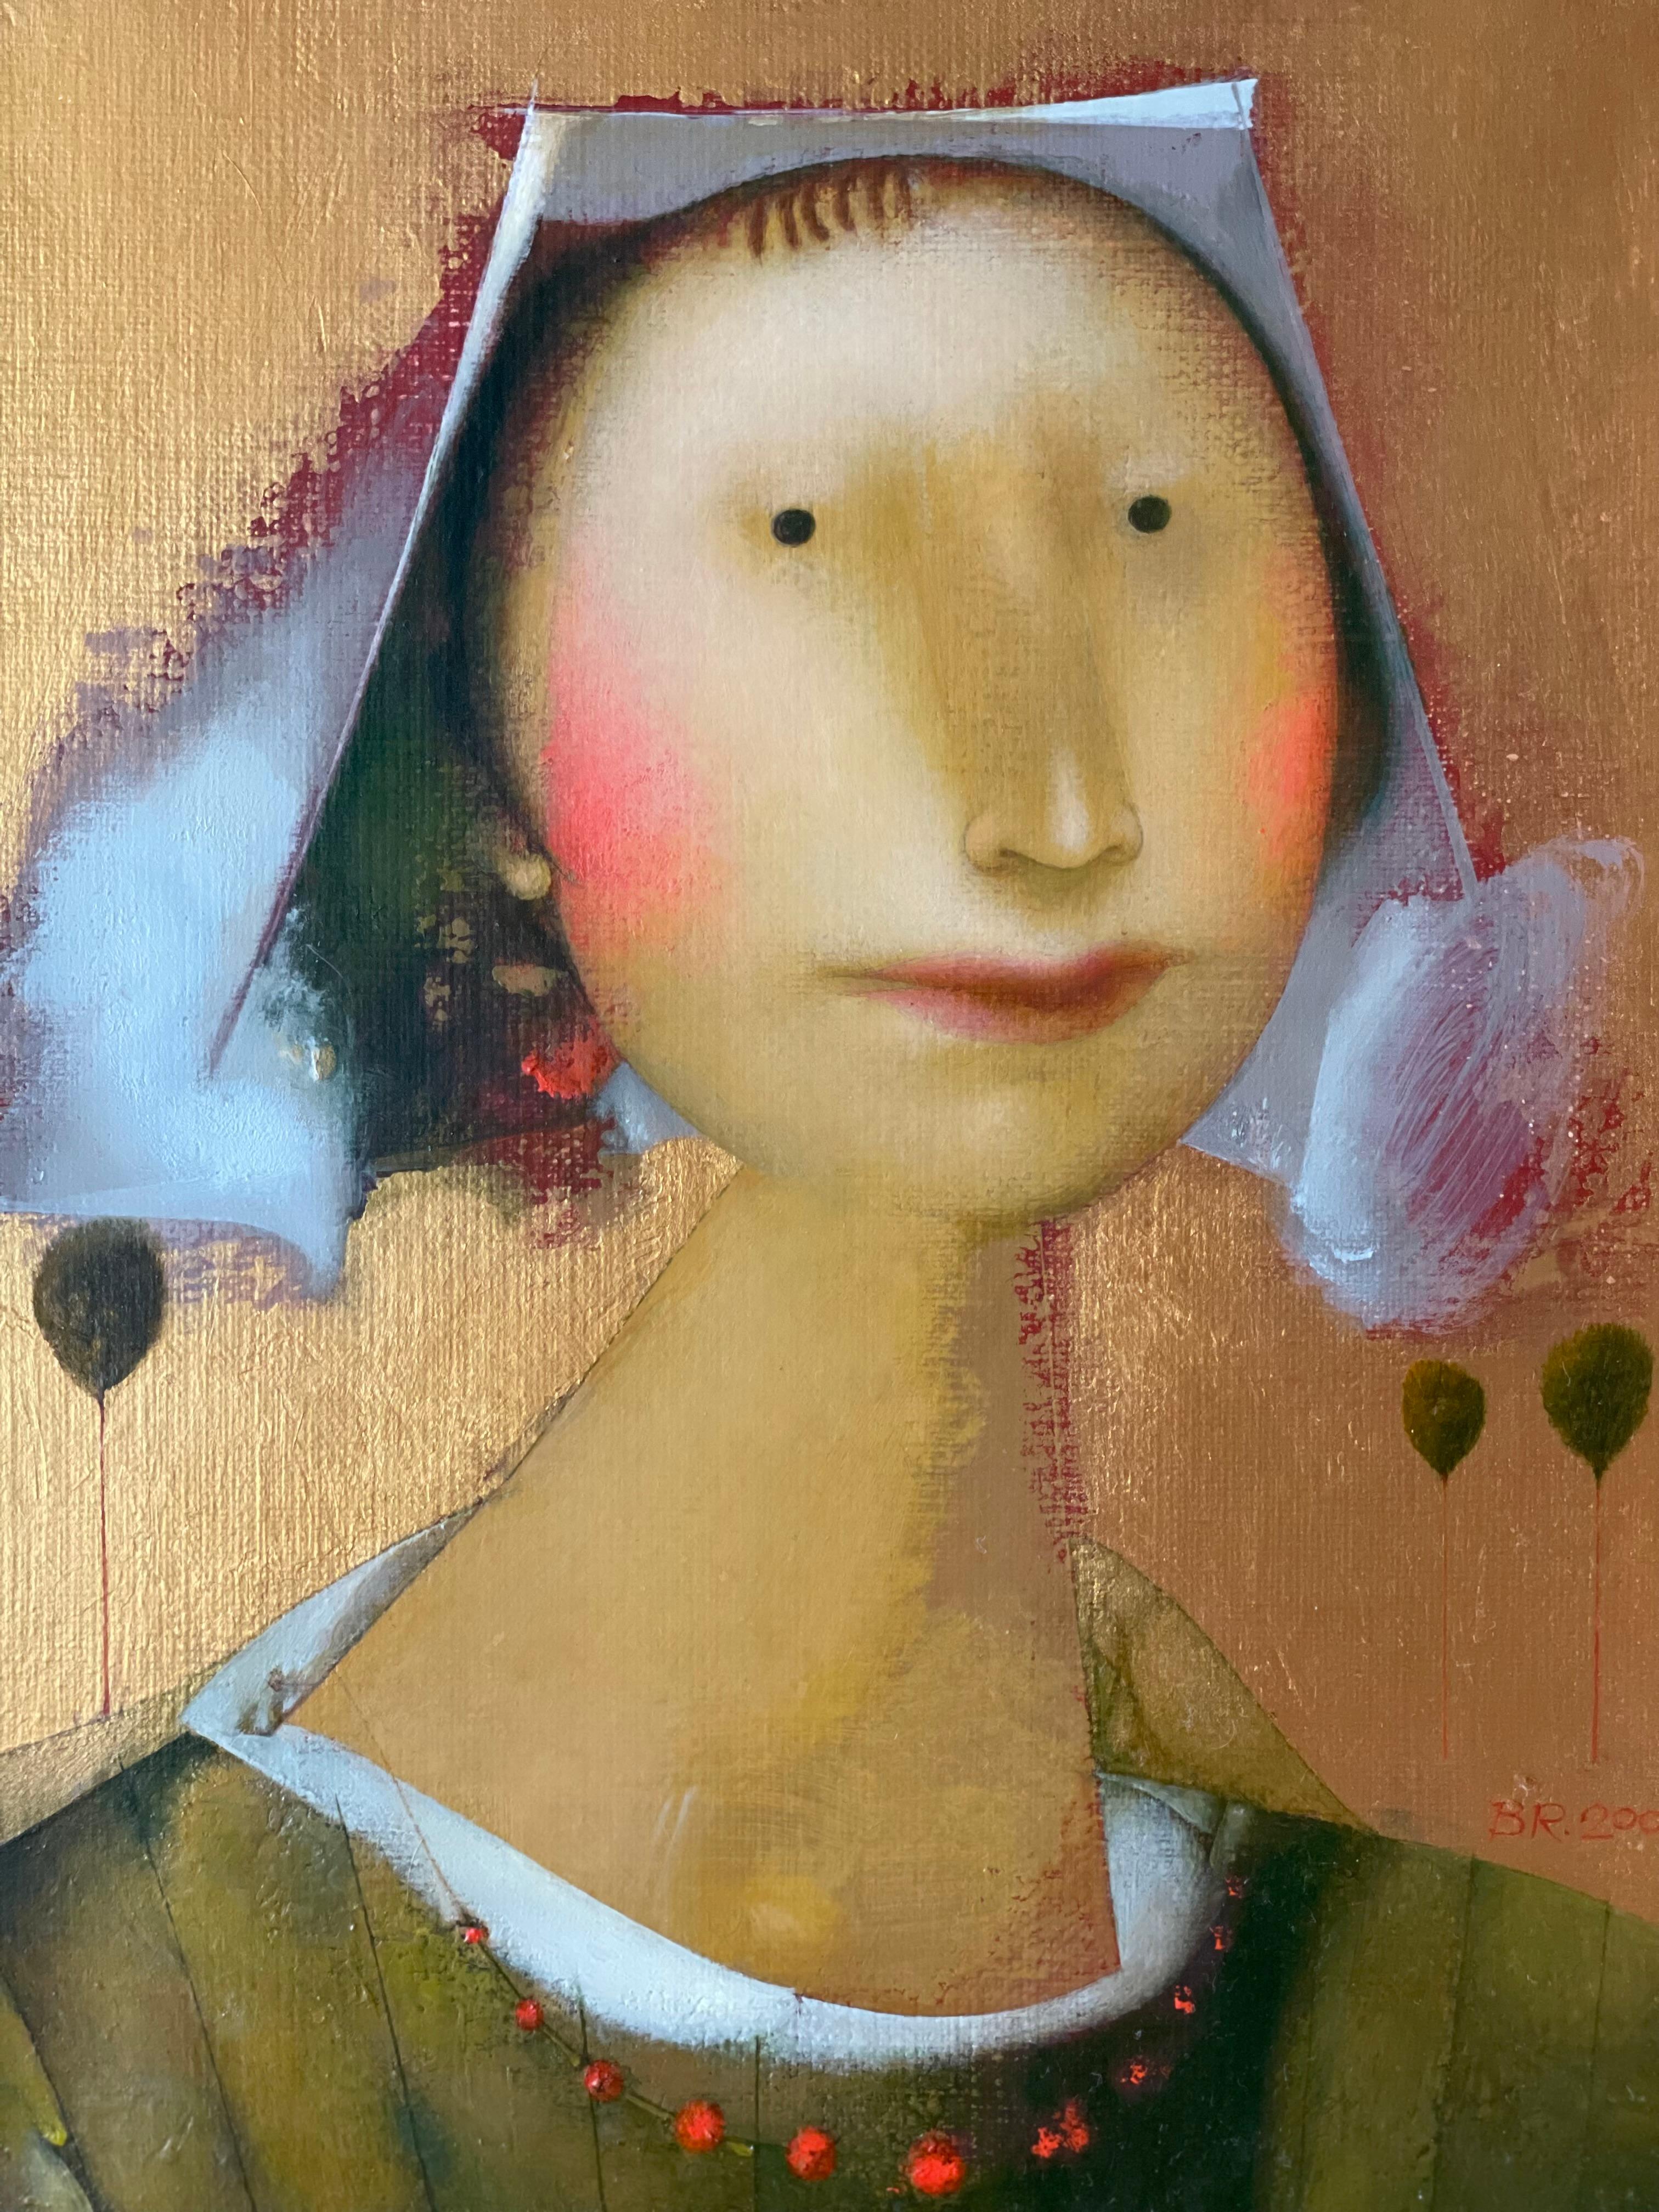 Ein neuer Hut – Painting von Volodymyr Radko